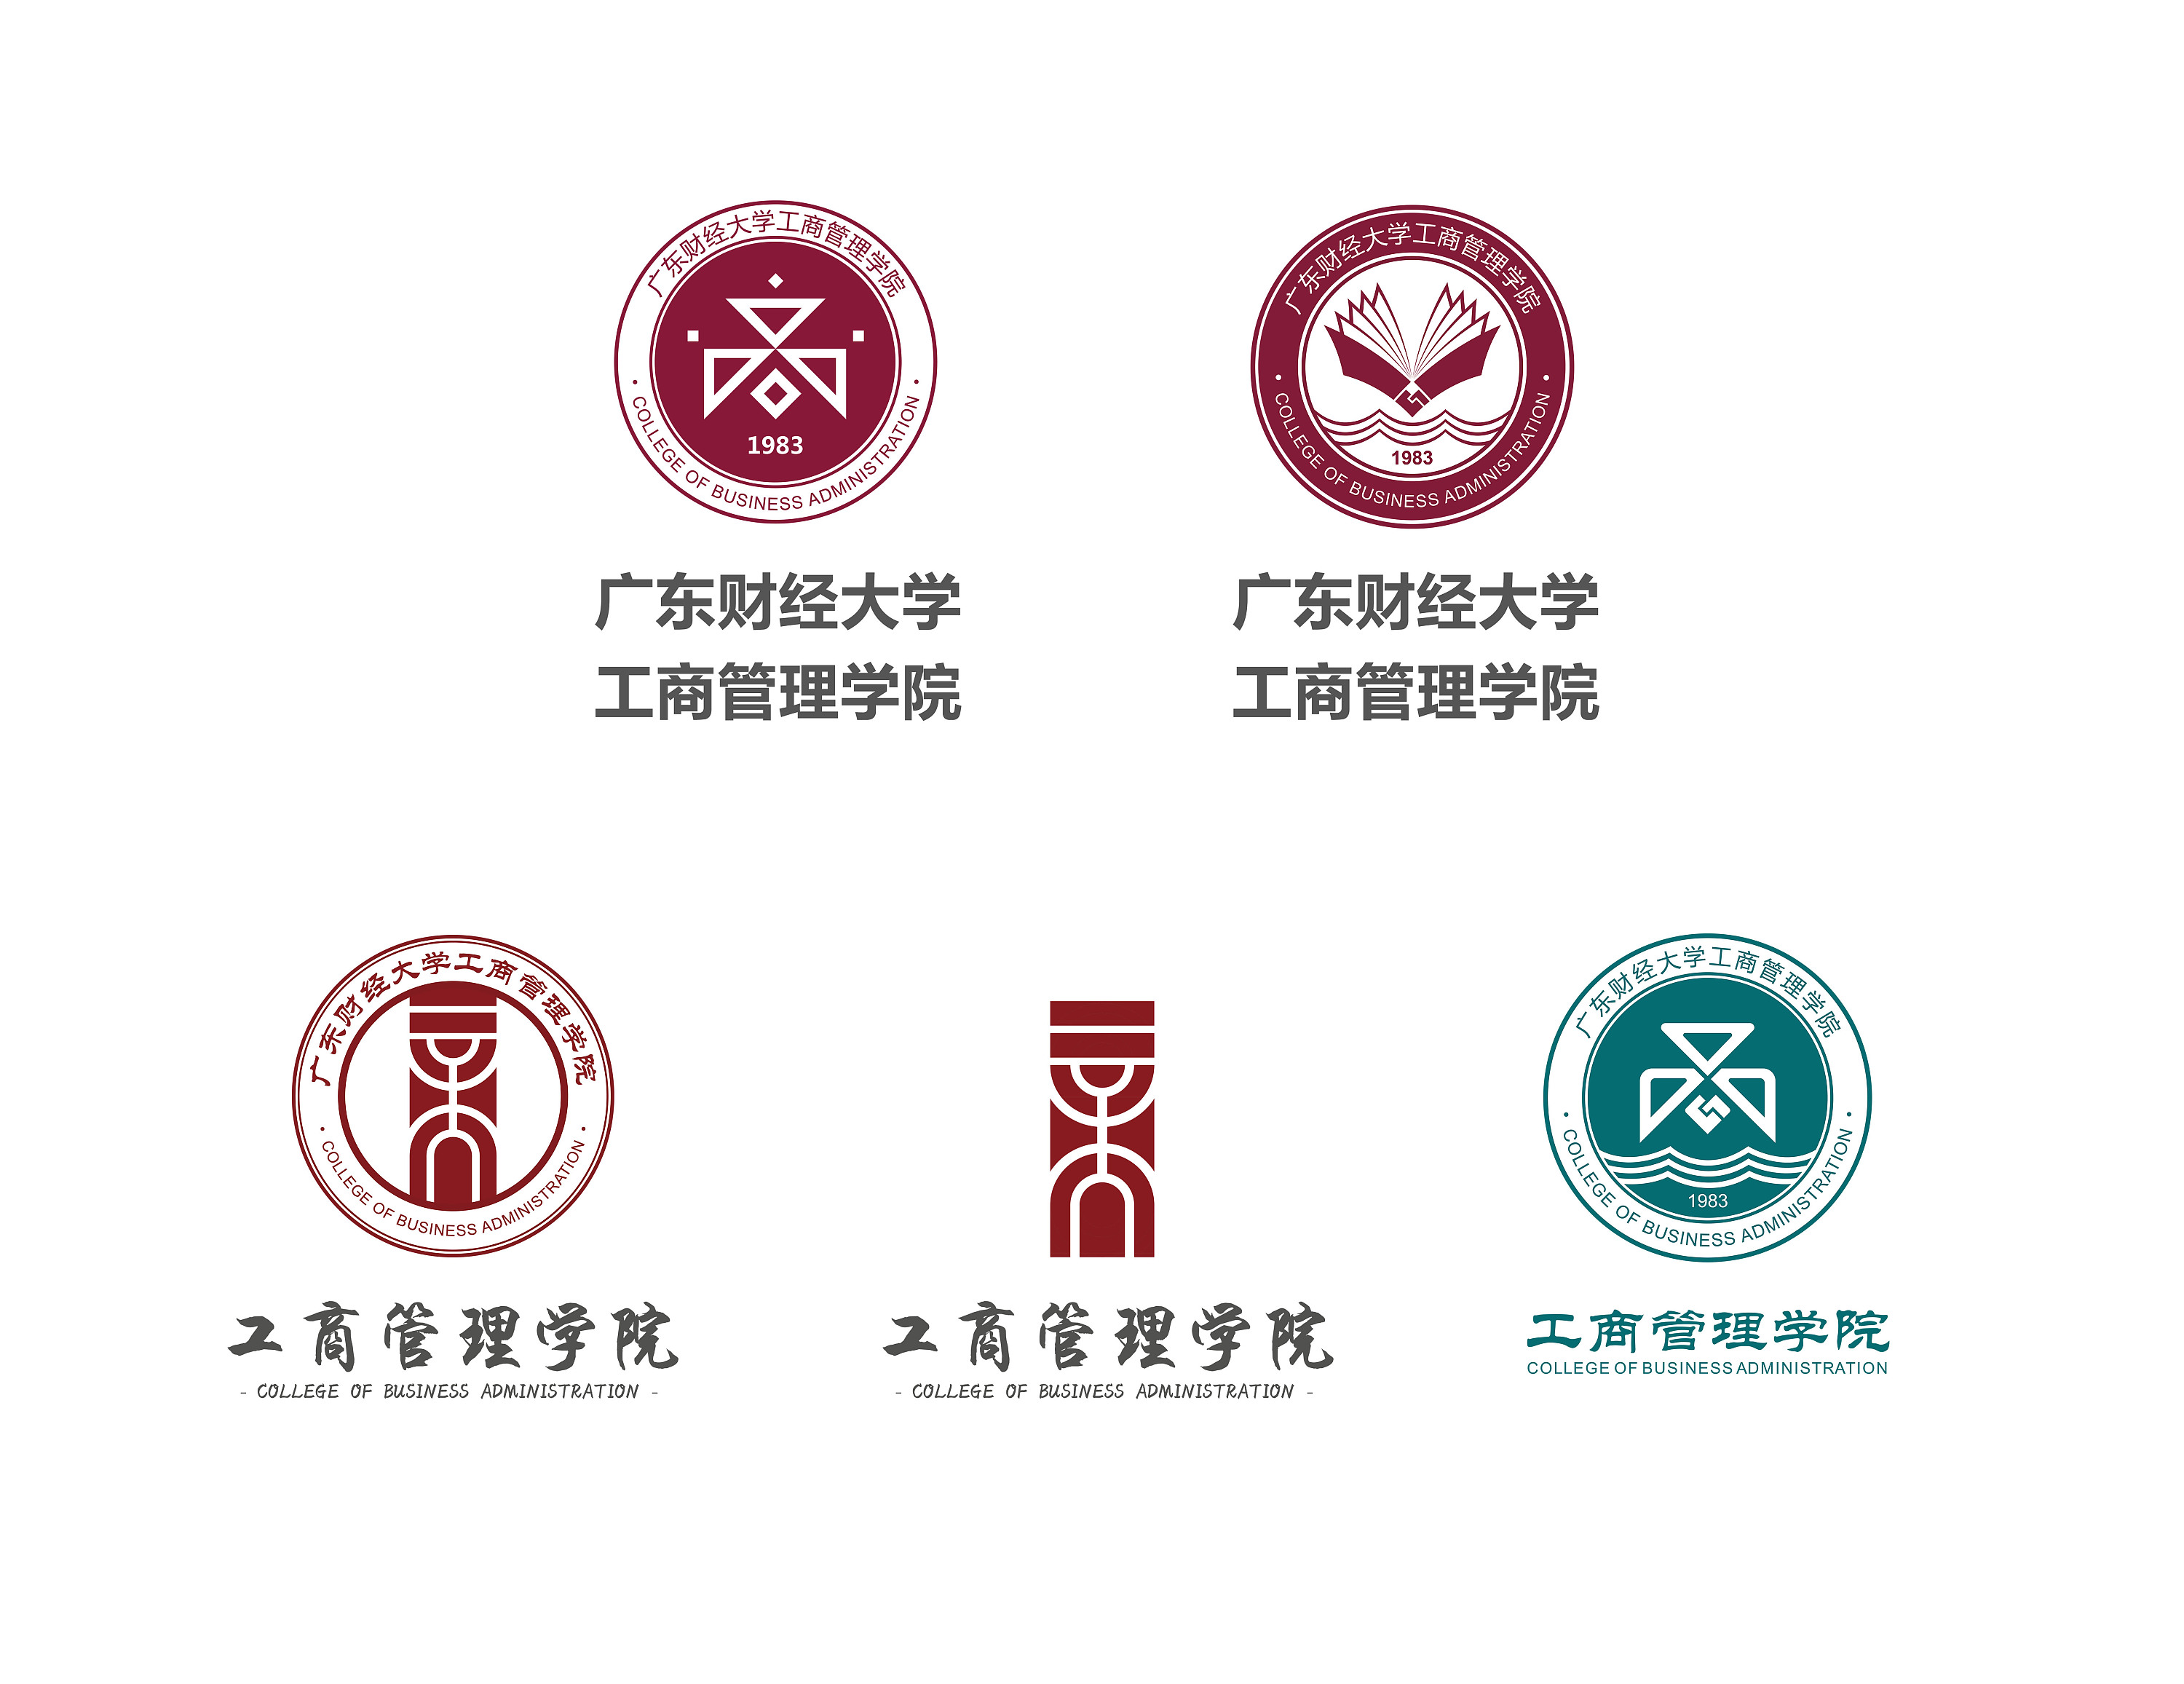 学校工商管理学院的院徽设计|平面|标志|leungc